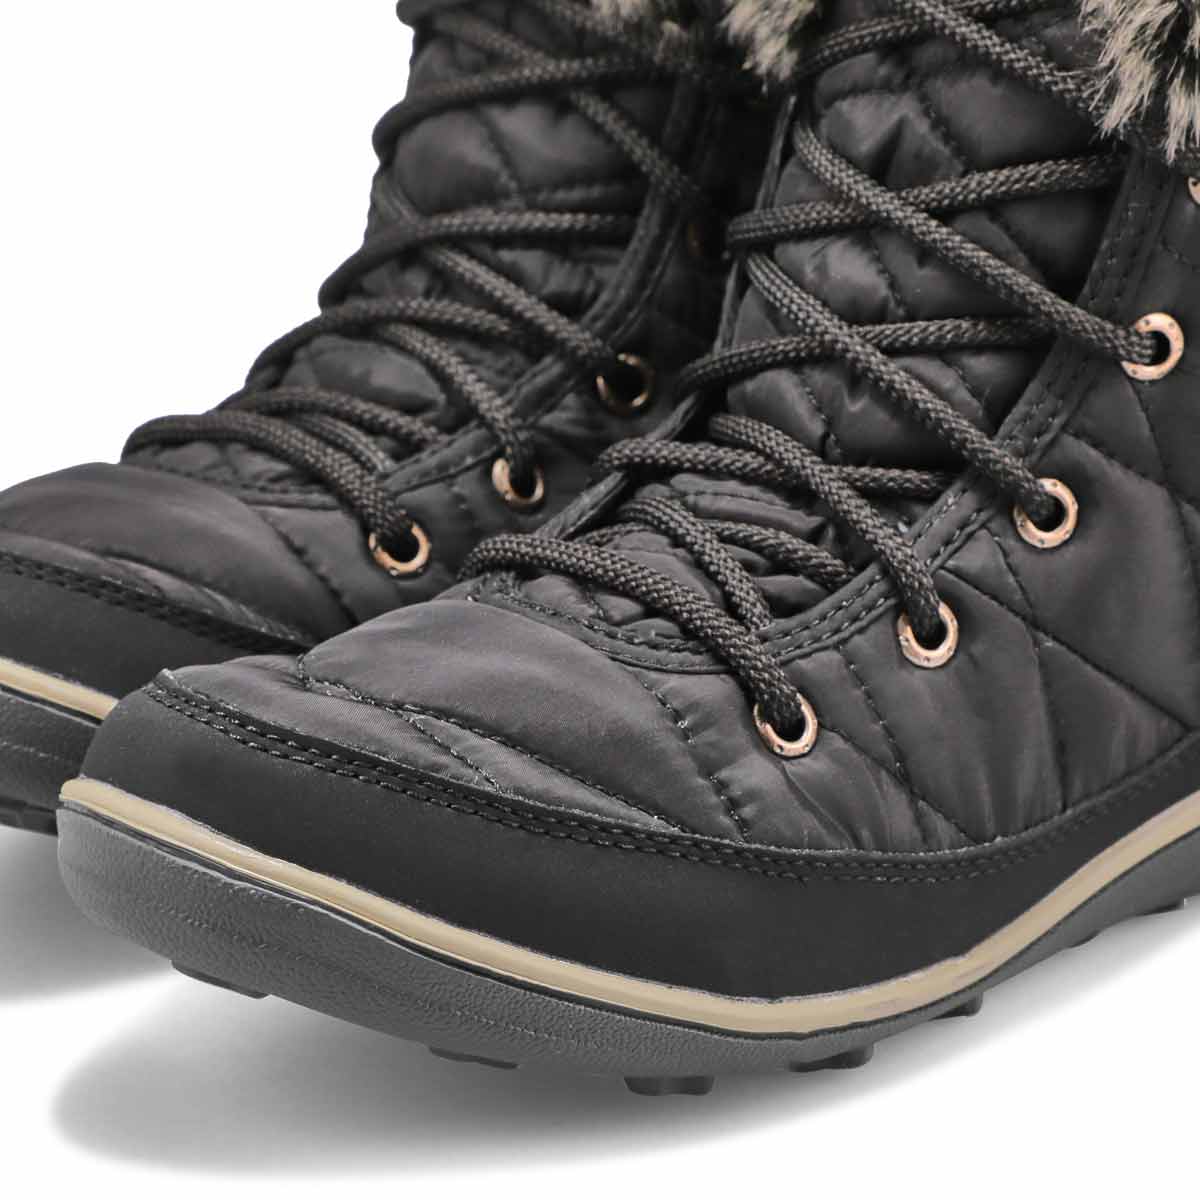 Women's Heavenly OmniHeat Snow Boot - Black